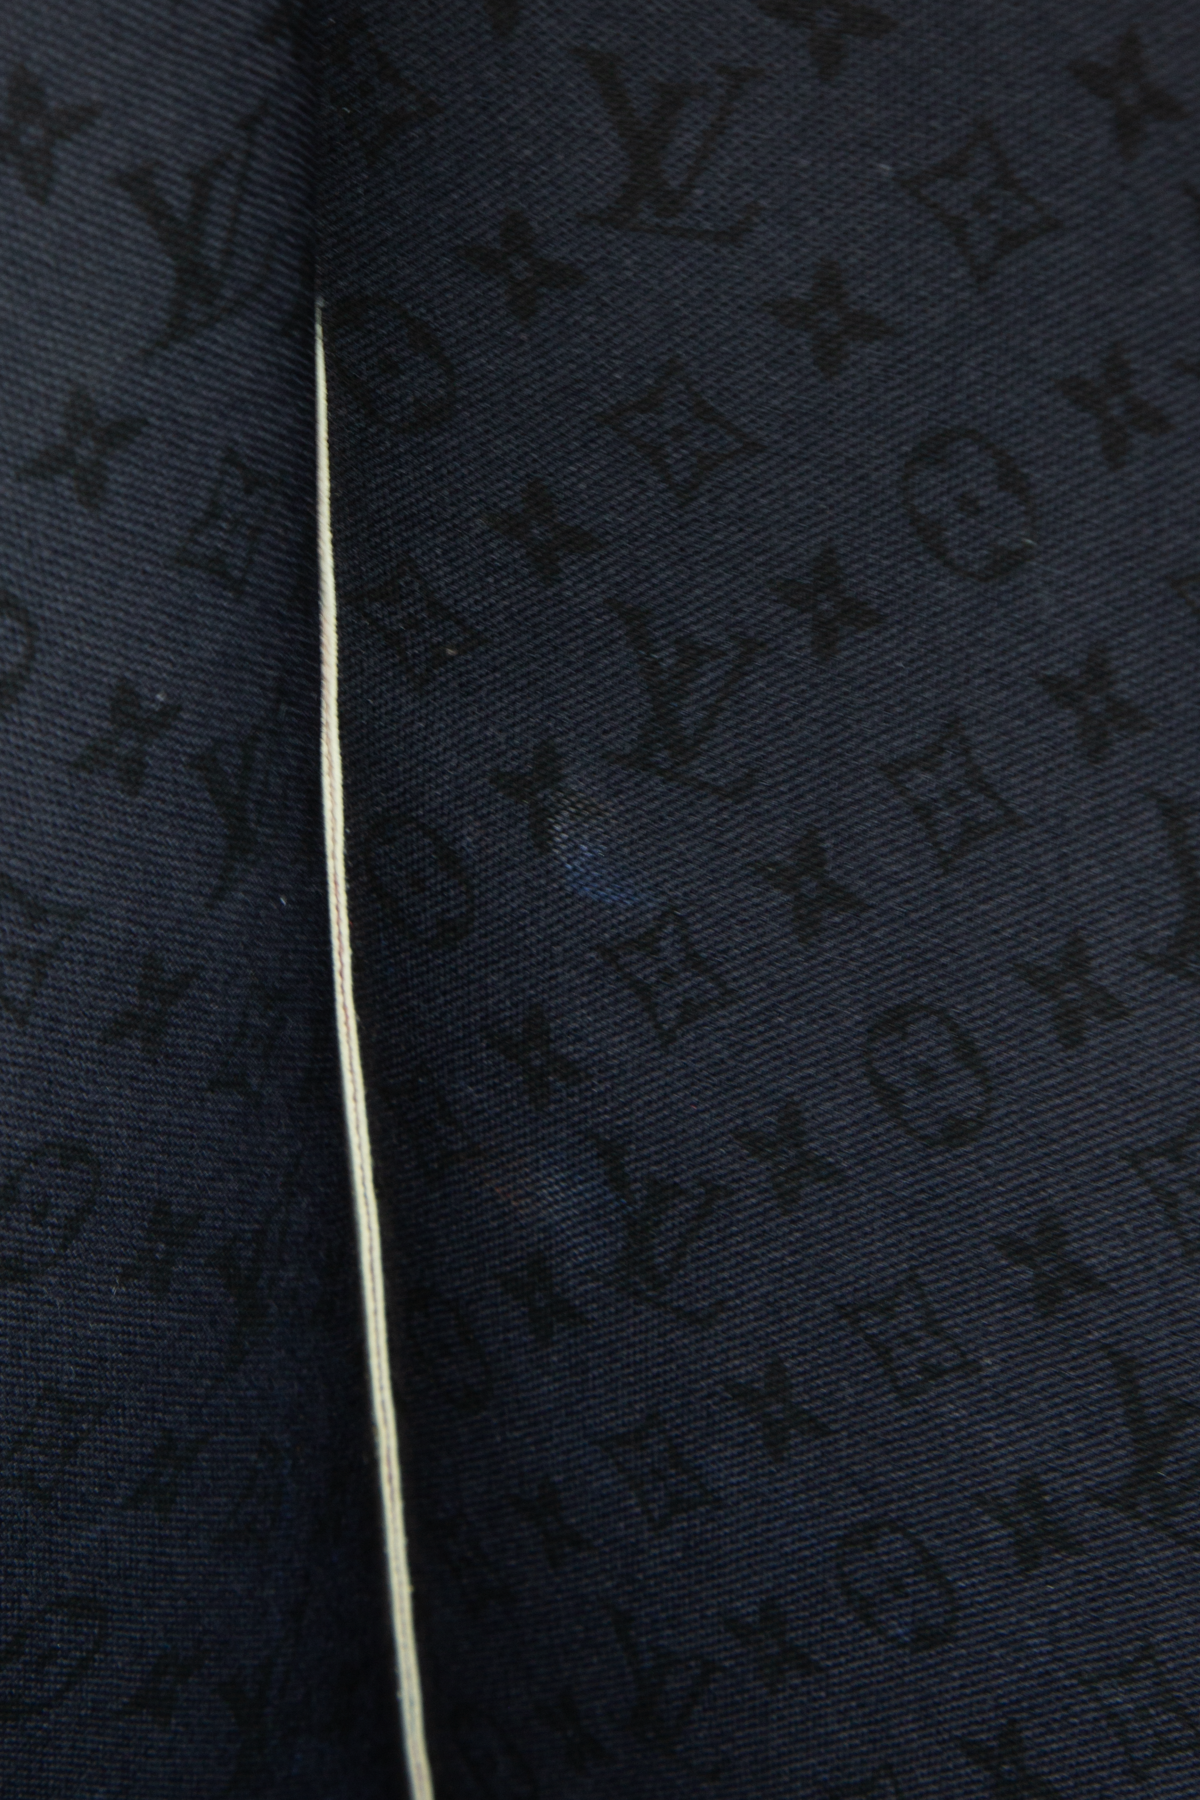 Louis Vuitton My Monogram Eclipse Scarf Grey Wool